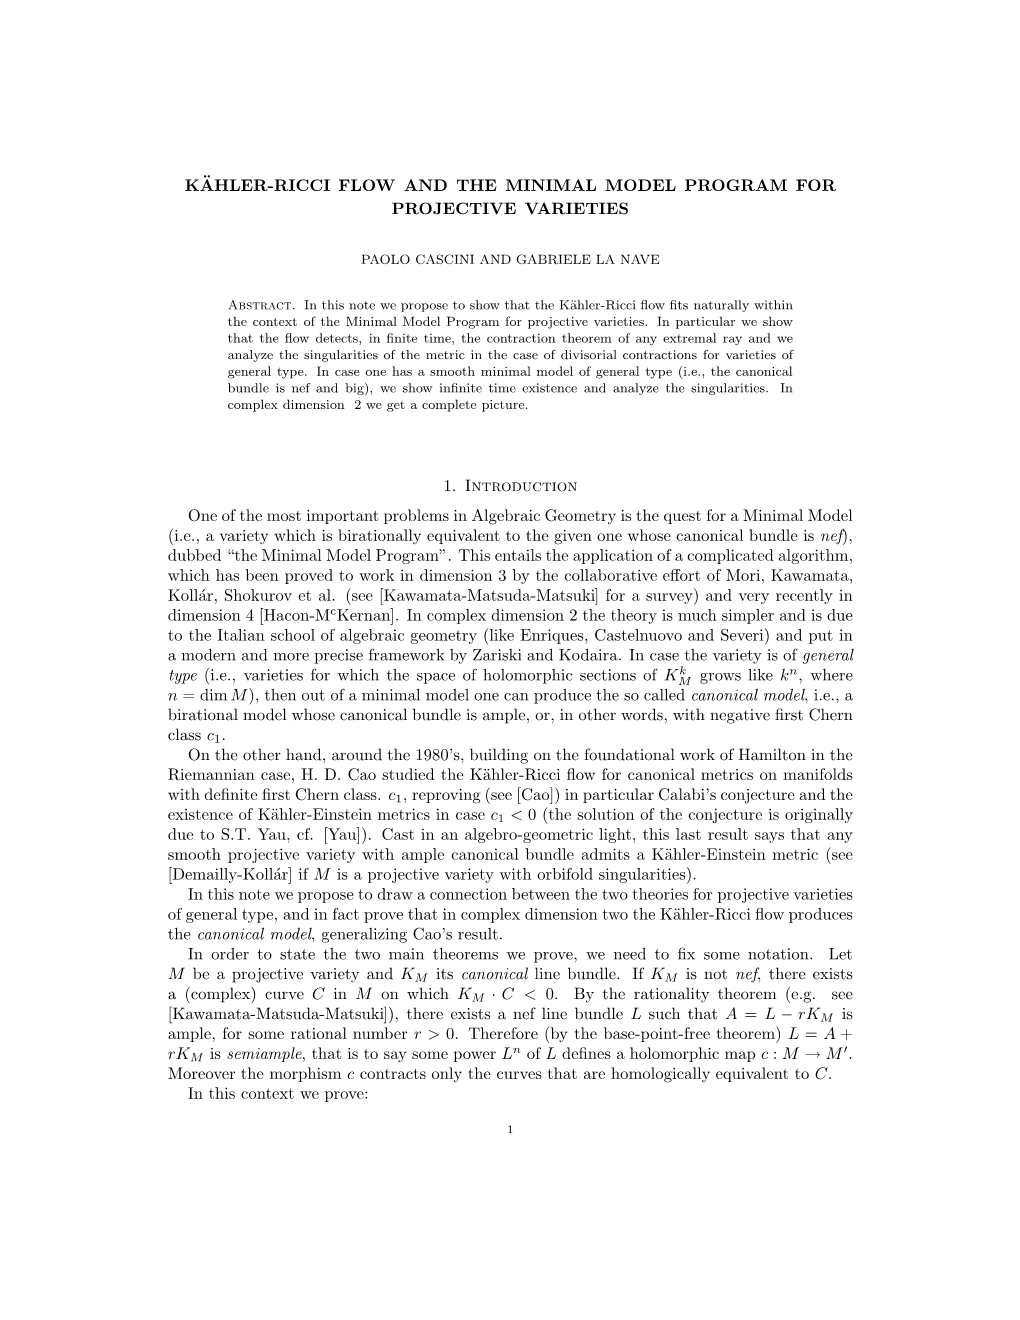 K¨Ahler-Ricci Flow and the Minimal Model Program For